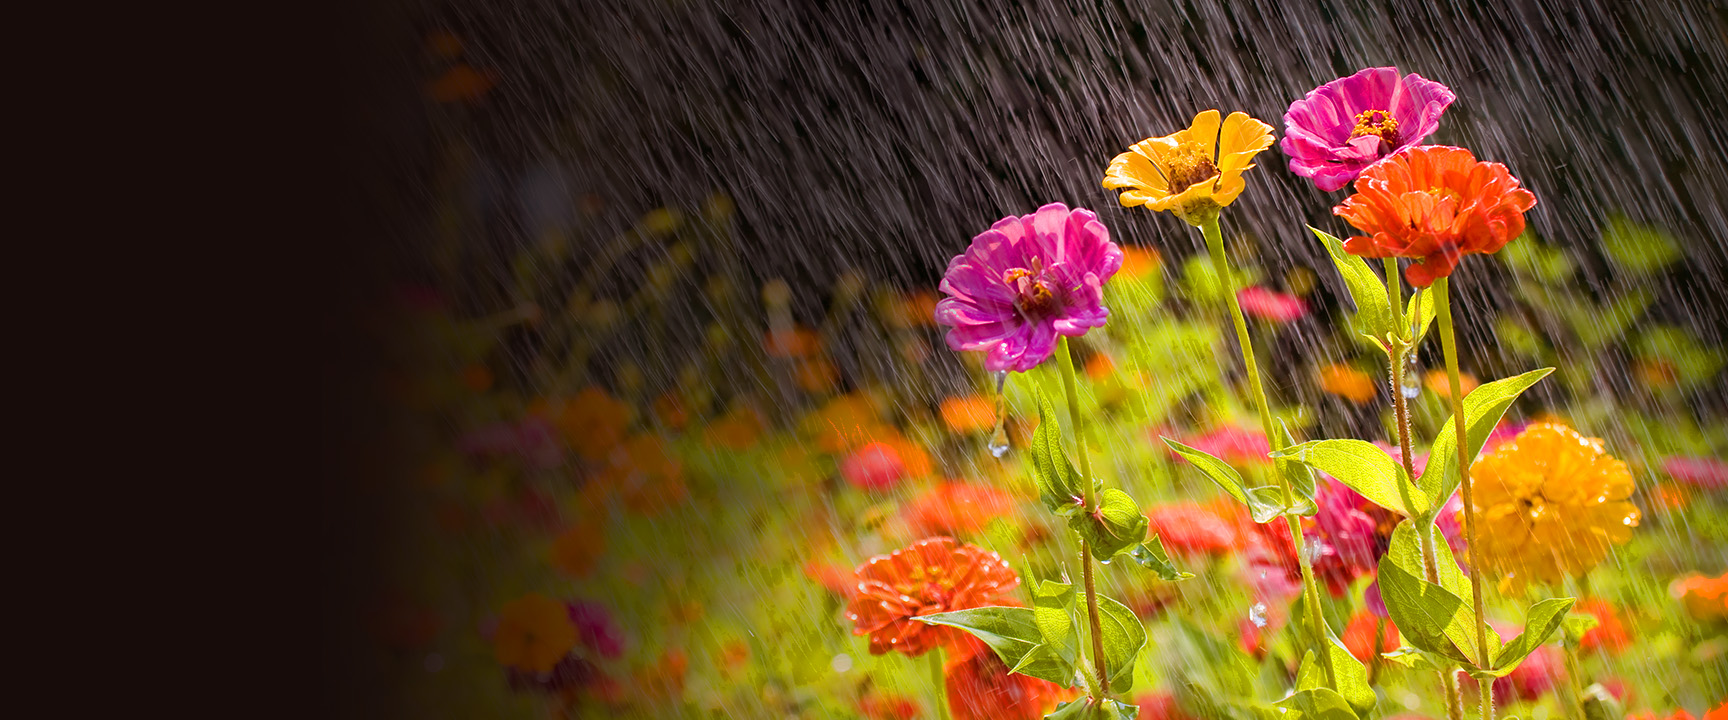 الزهور الملونة في المطر